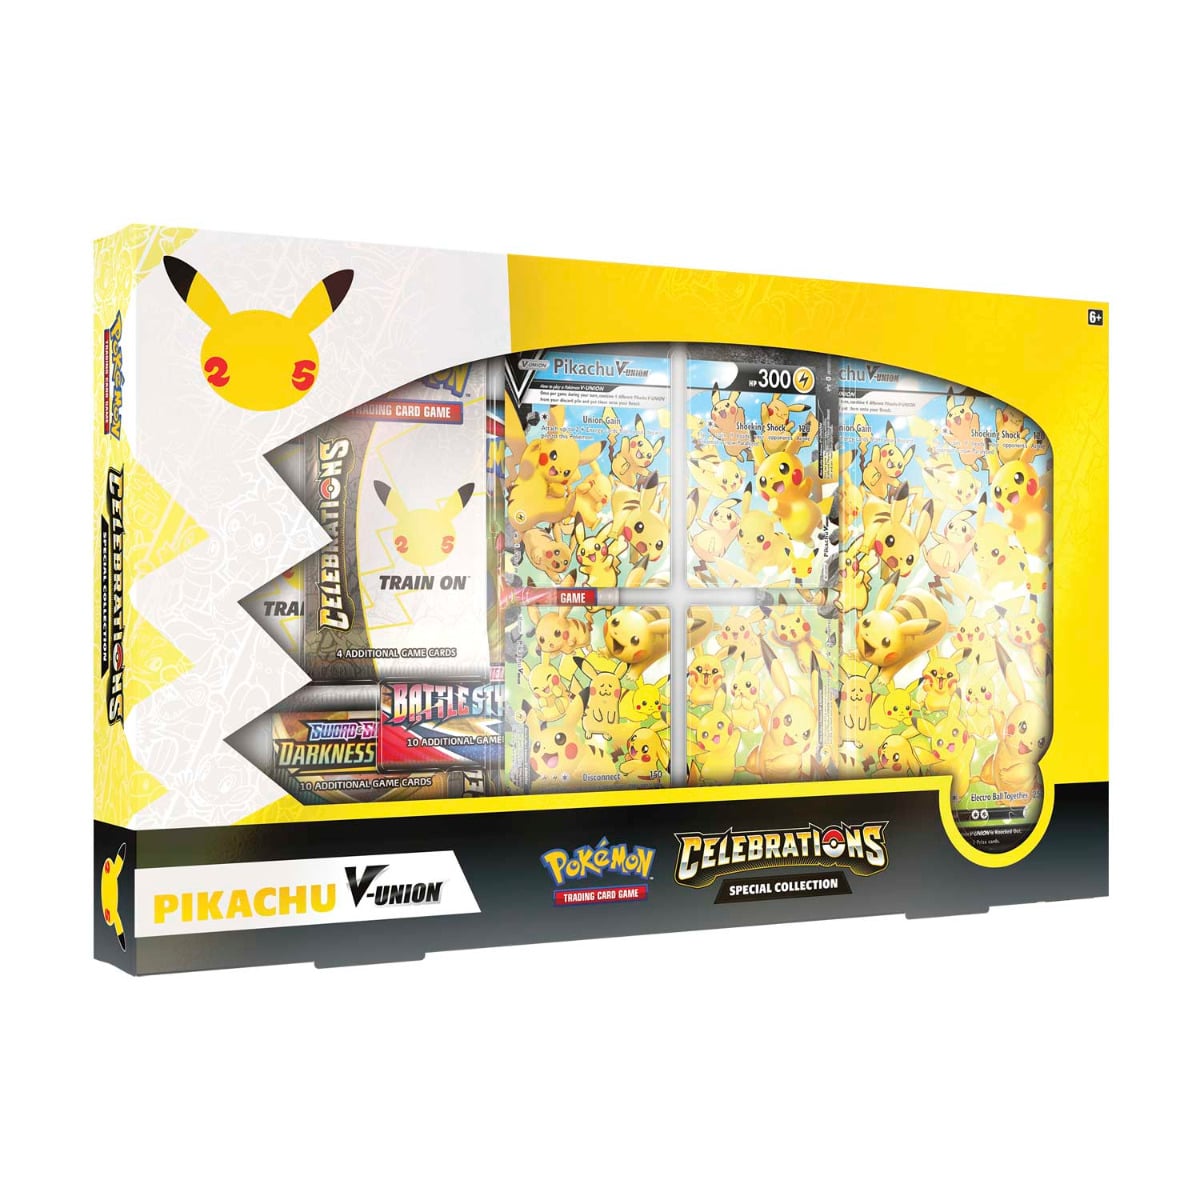 Pokémon Celebrations Special Collection Pikachu V-Union keräilykortti – lahjapakkaus